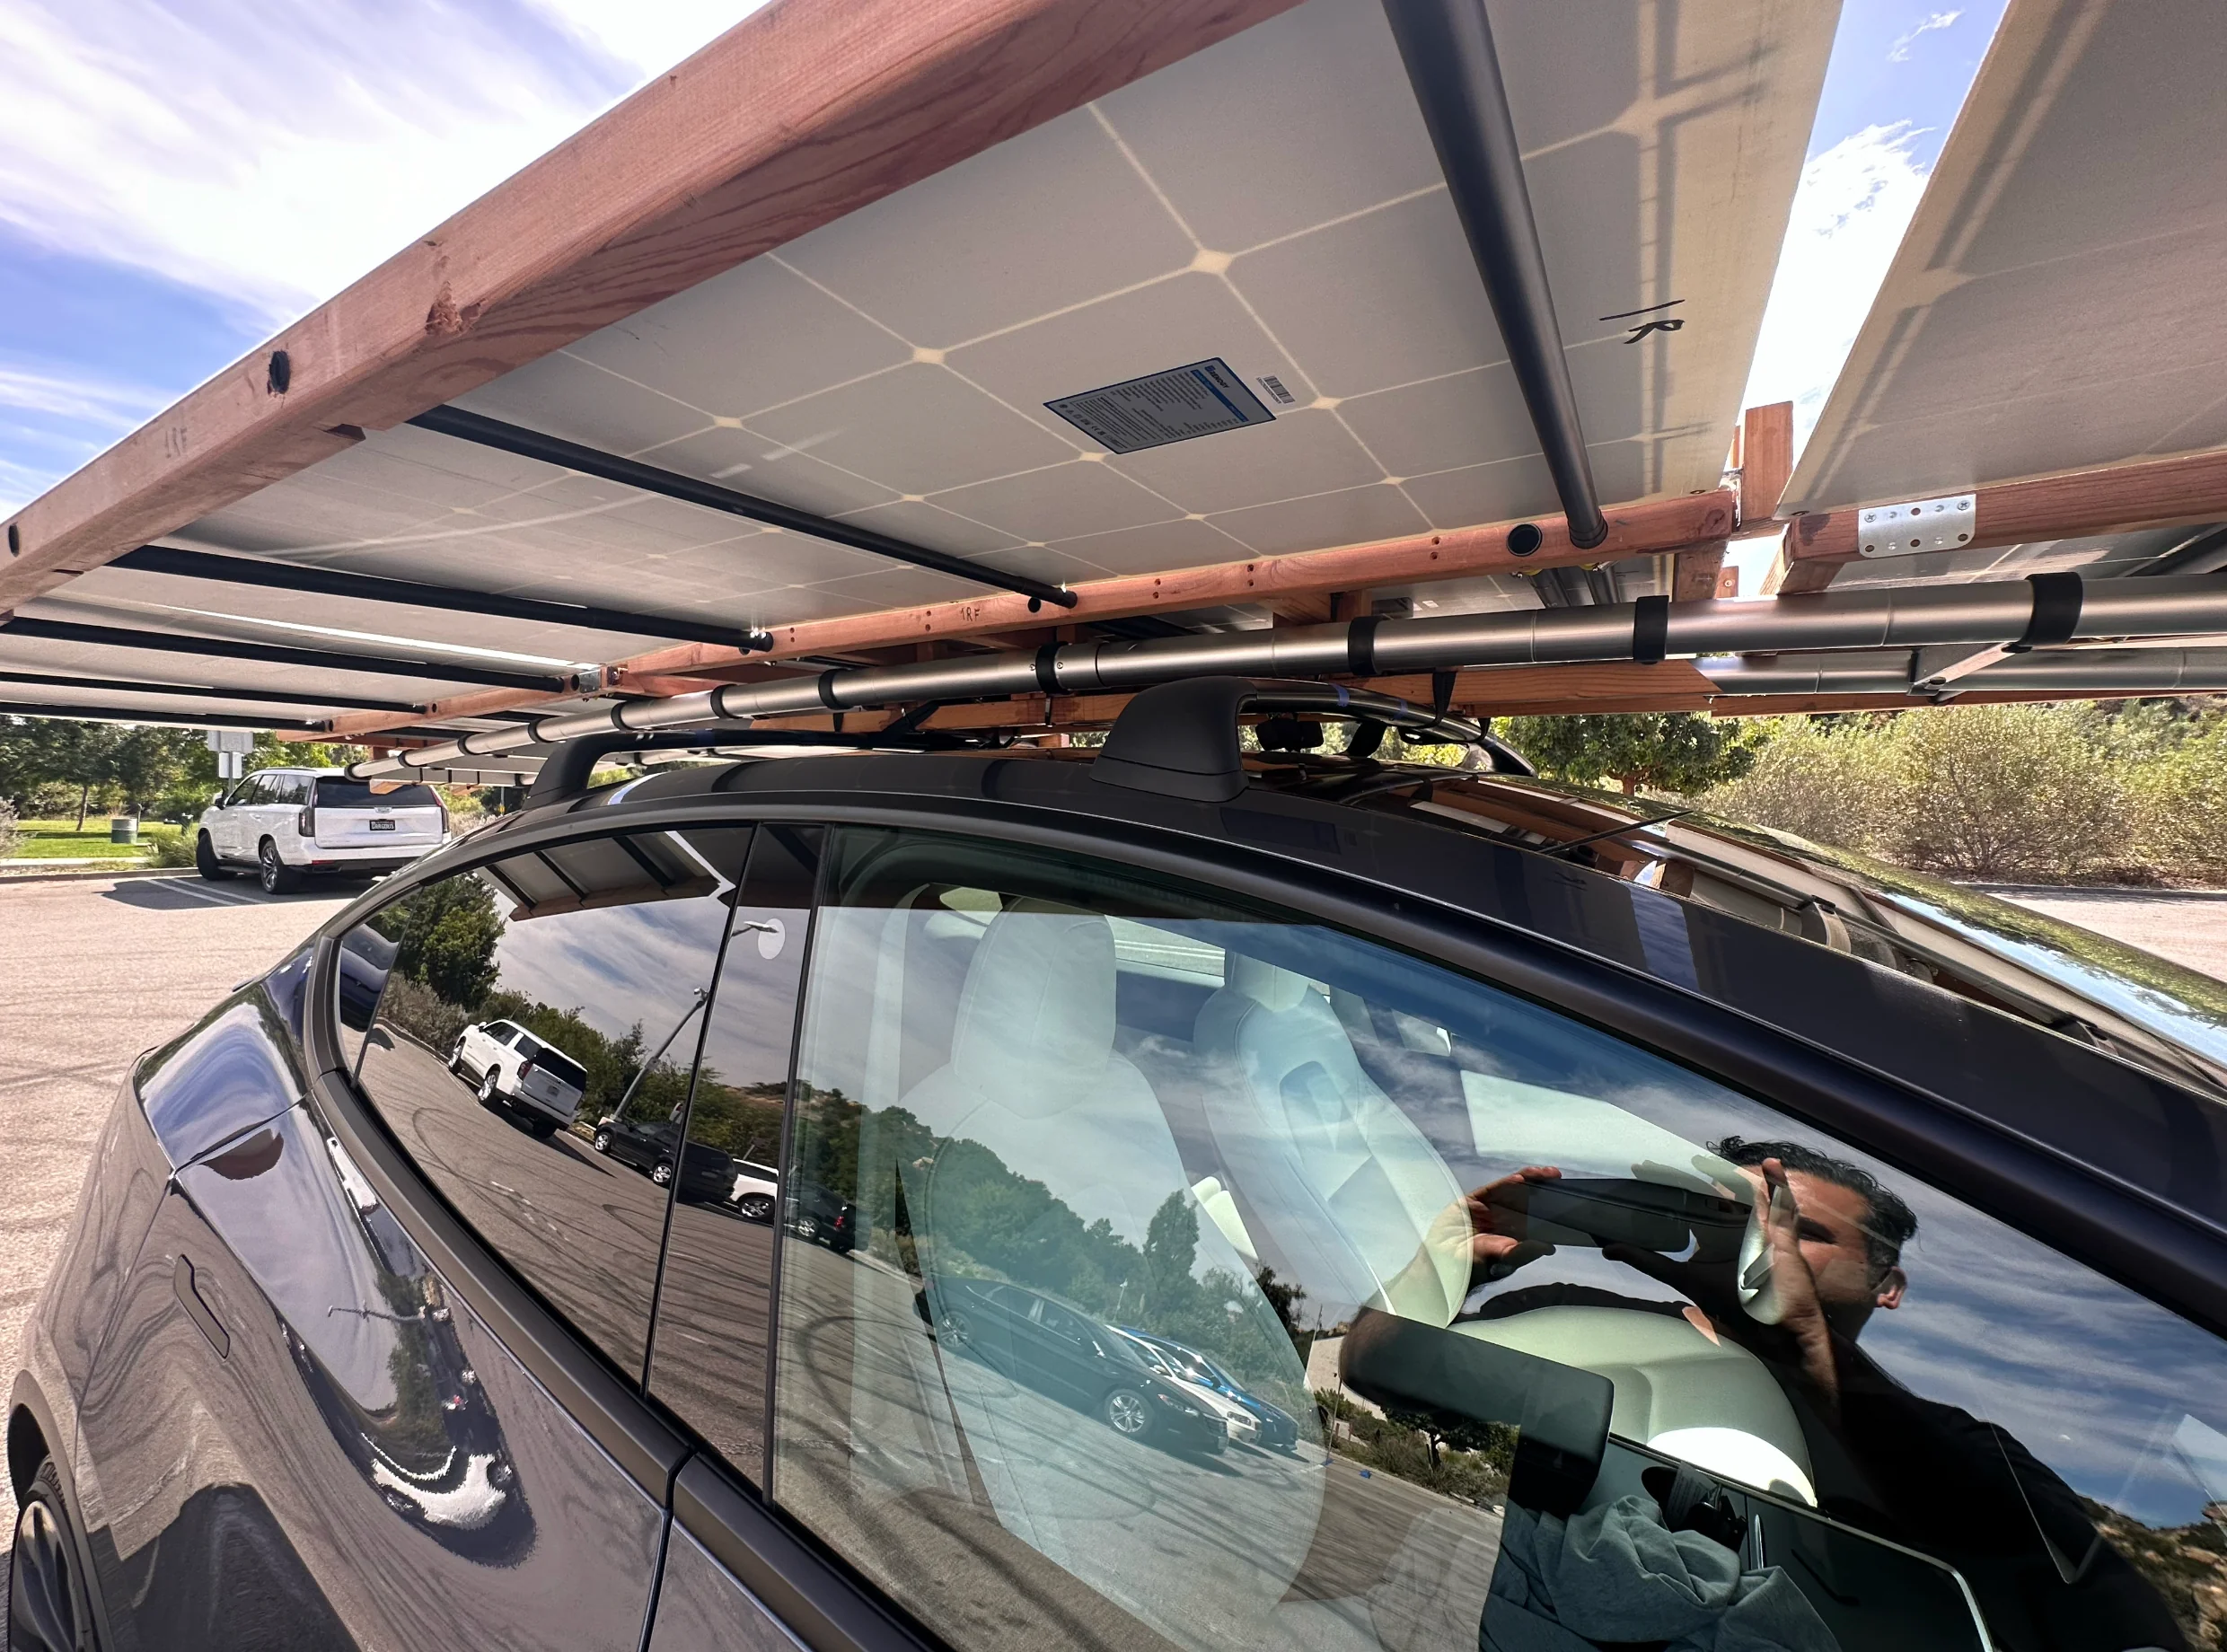 國外網友自製可隨電動車移動的太陽能板陣列，每日可增加20 英里到 60 英里續航 - 電腦王阿達